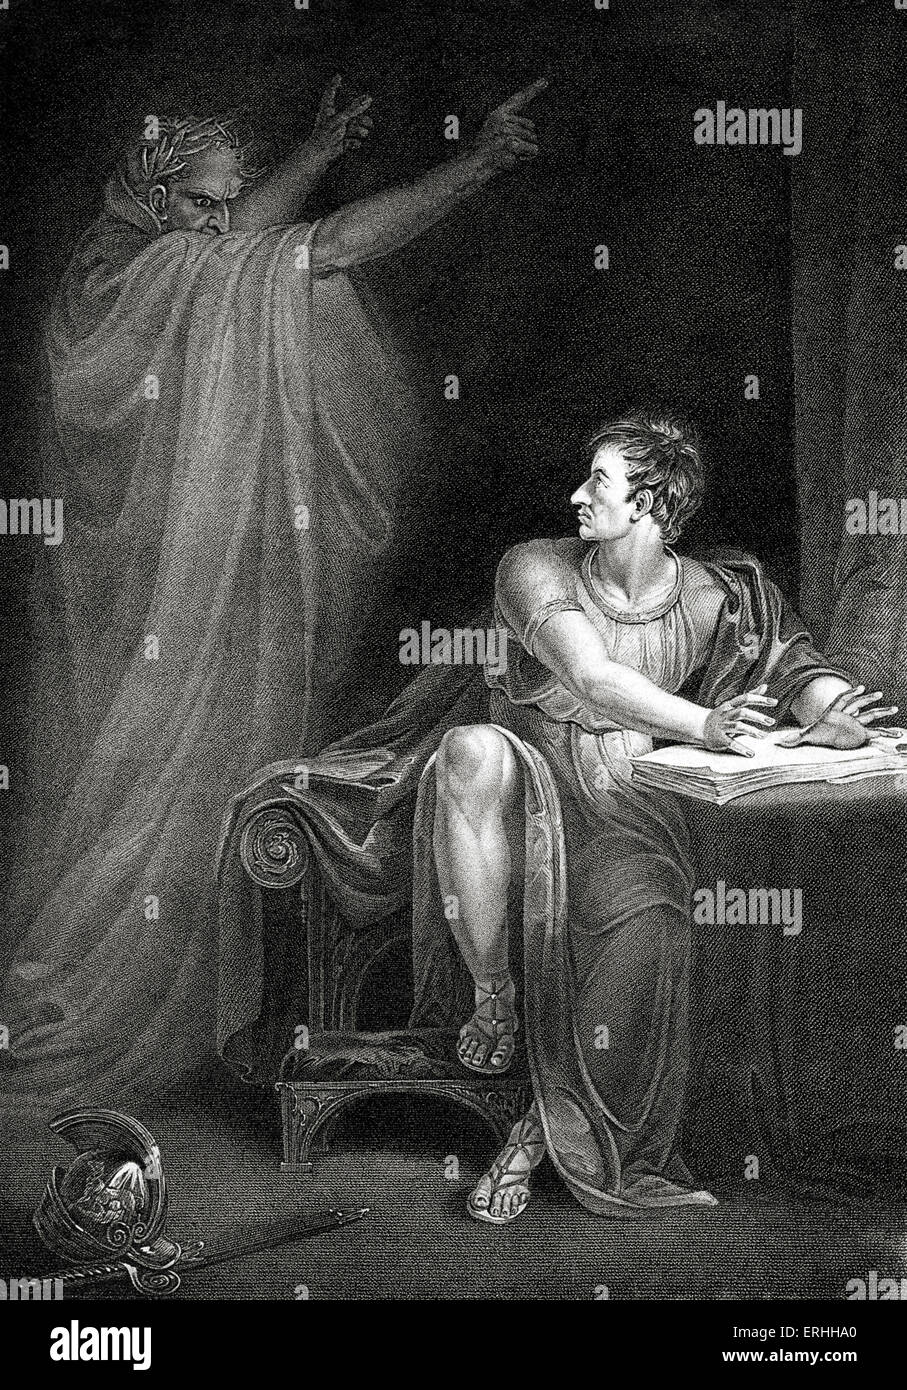 William Shakespeare 's jouer Jules César - Acte IV Scène III : Brutus et le fantôme de César. Le poète et dramaturge anglais. 26 Banque D'Images